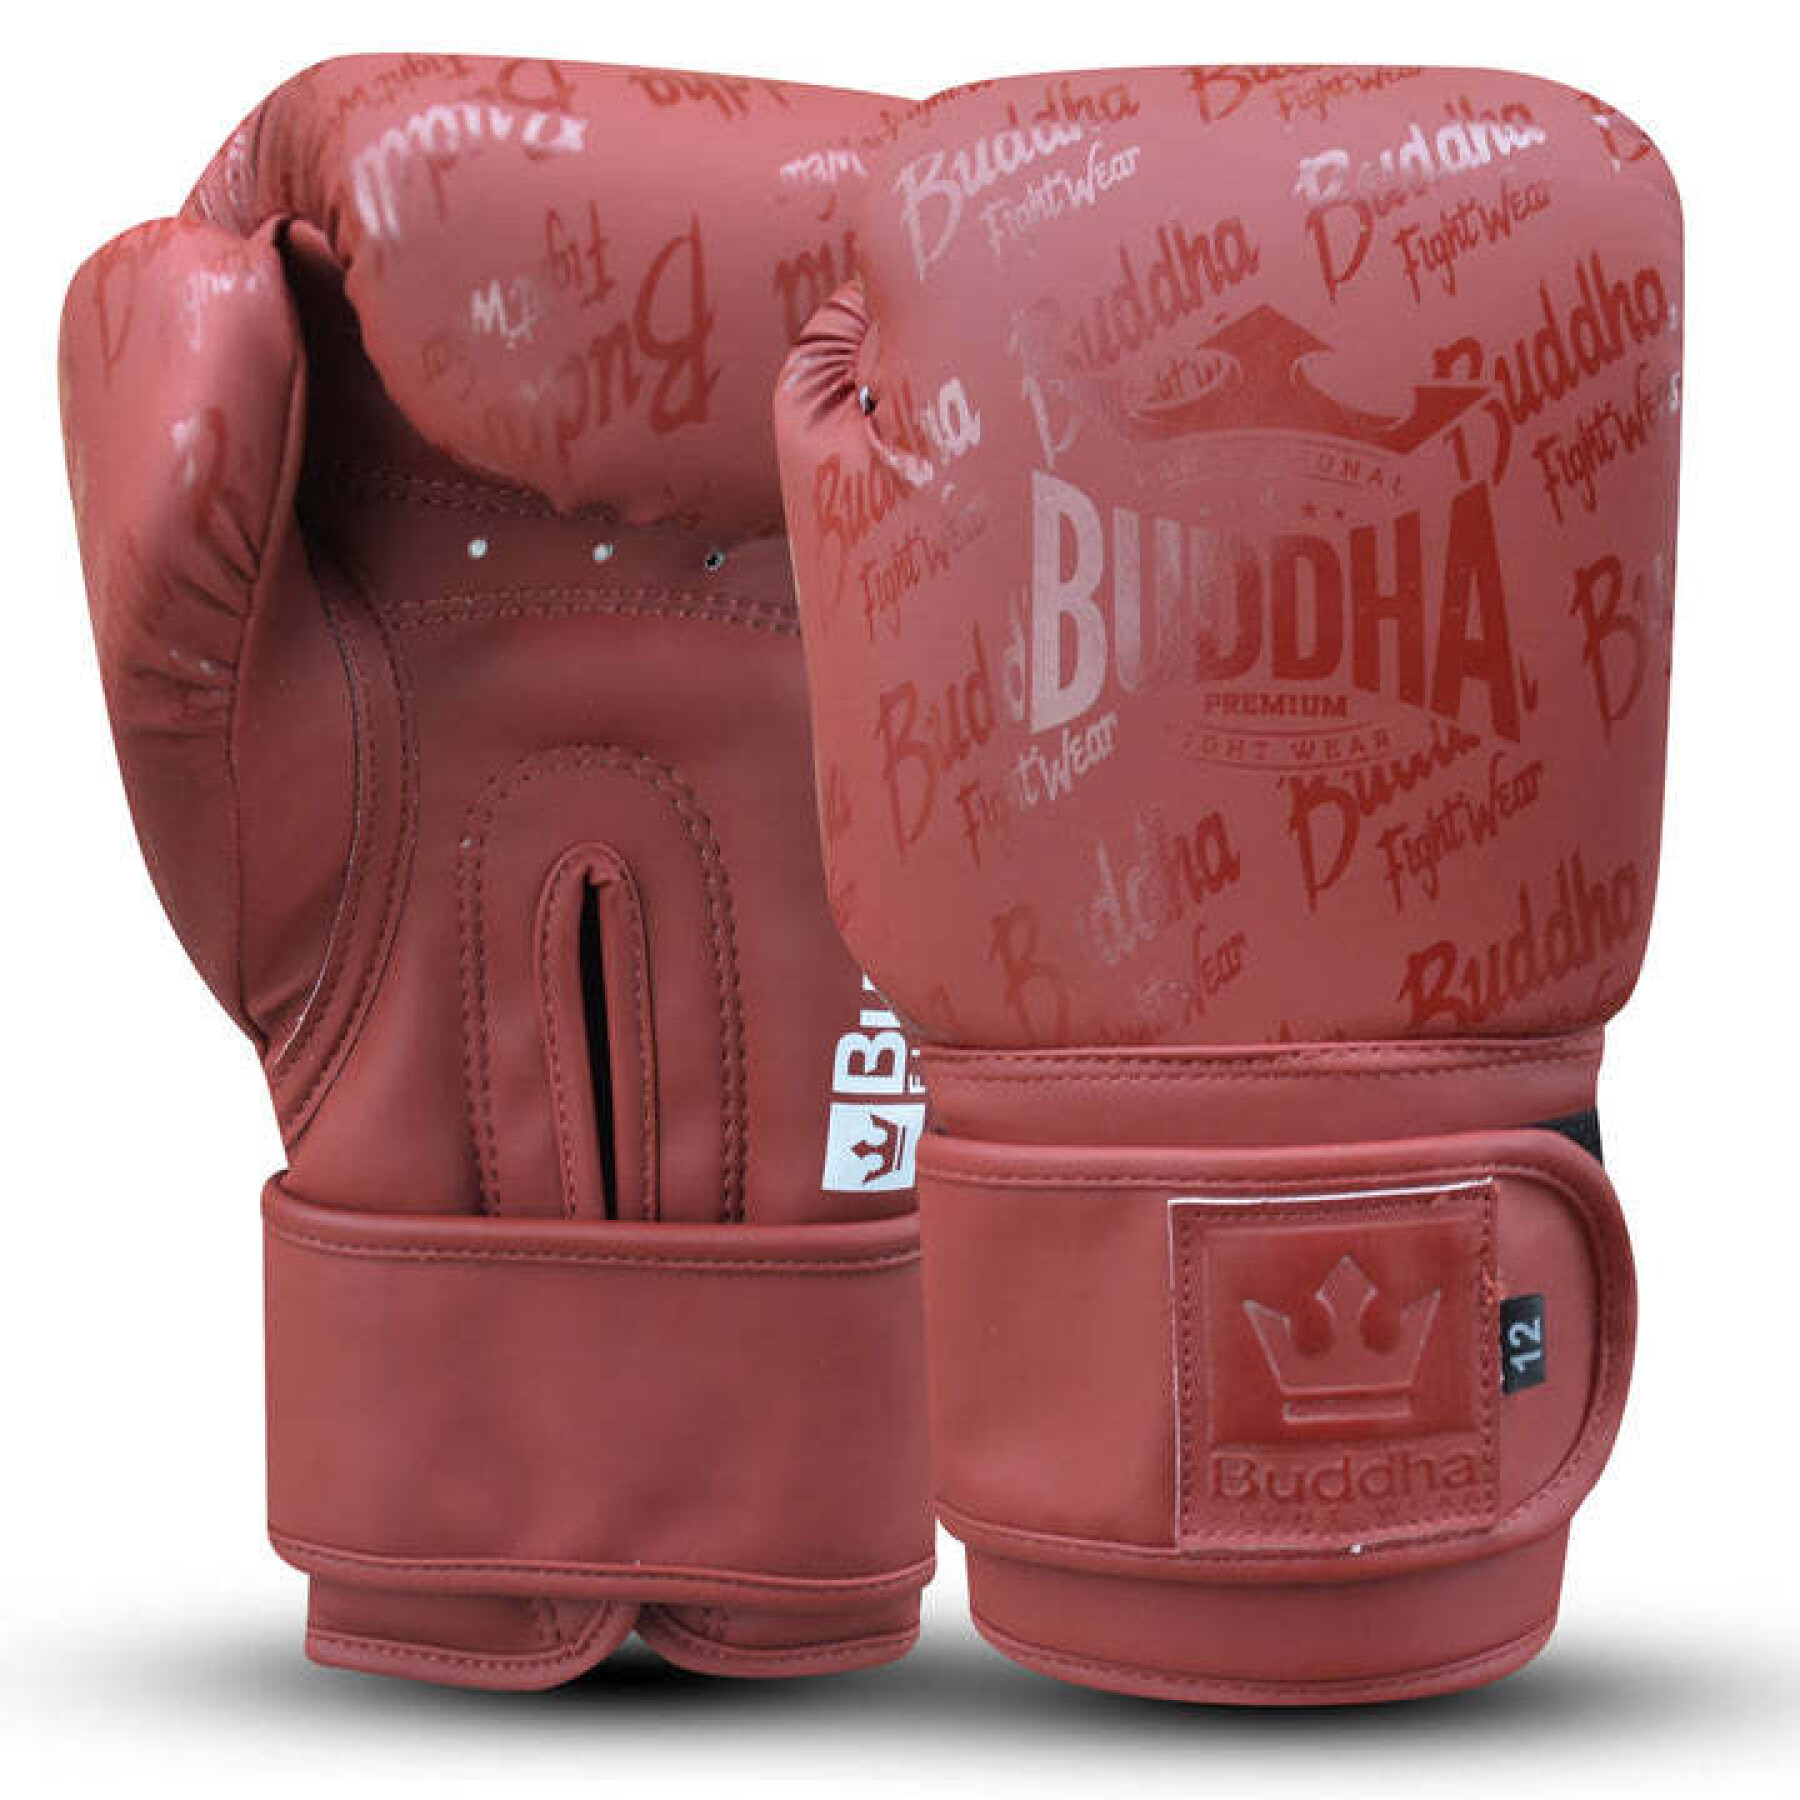 Guantes de boxeo tailandeses Buddha Fight Wear - Otros Deportes